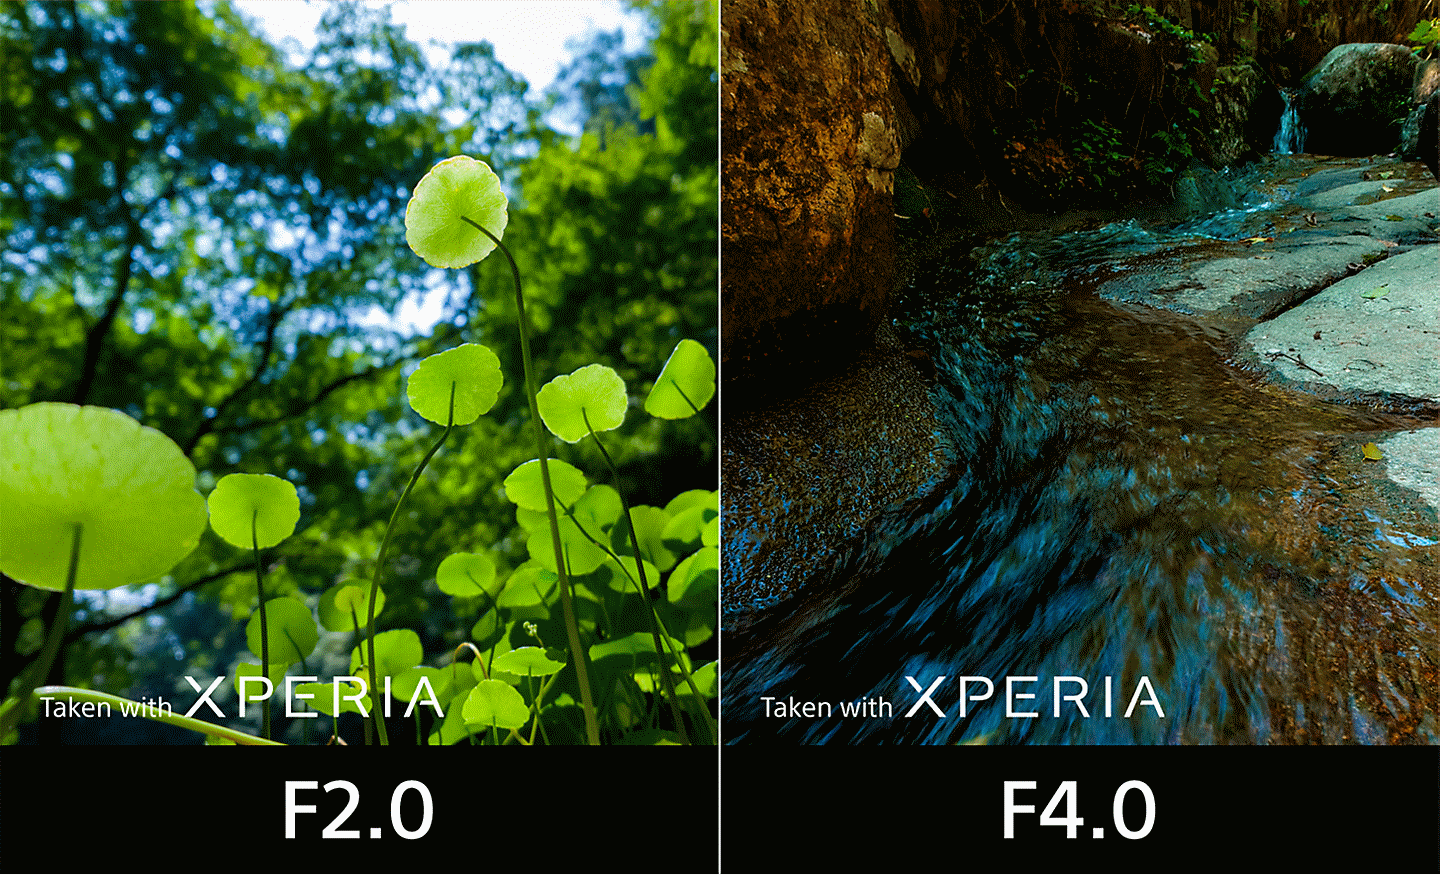 分割畫面，比較使用 F2.0 光圈拍攝的錄像影像與使用 F4.0 光圈拍攝的串流影像。影像上寫著「使用 XPERIA 拍攝」的文字。